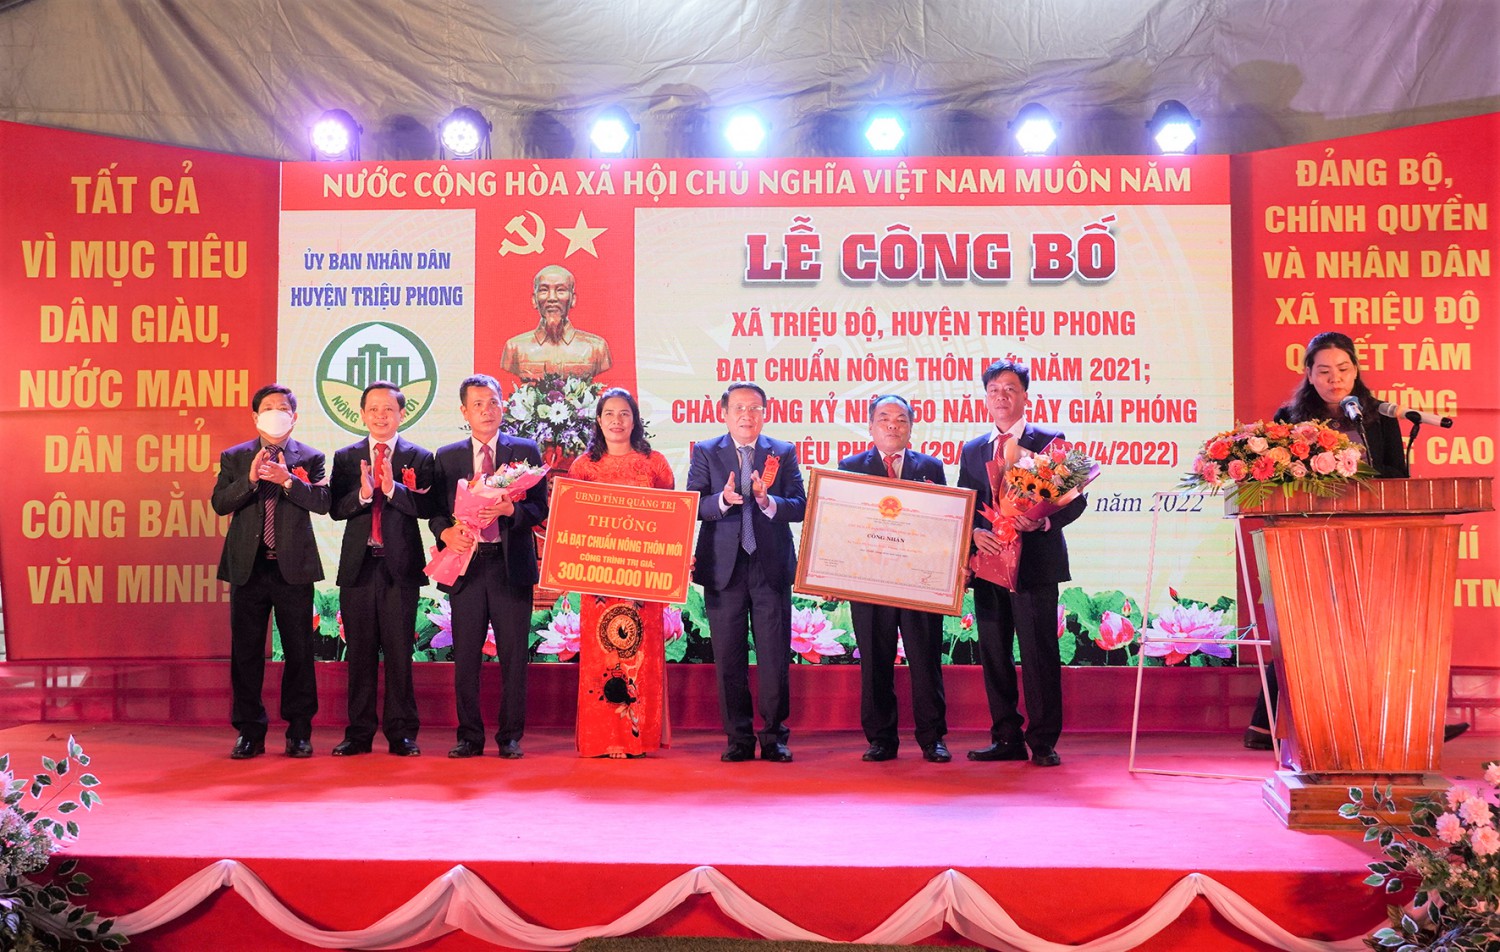 Phó Chủ tịch Thường trực UBND tỉnh Hà Sỹ Đồng trao bằng công nhận đạt chuẩn nông thôn mới cho xã Triệu Độ